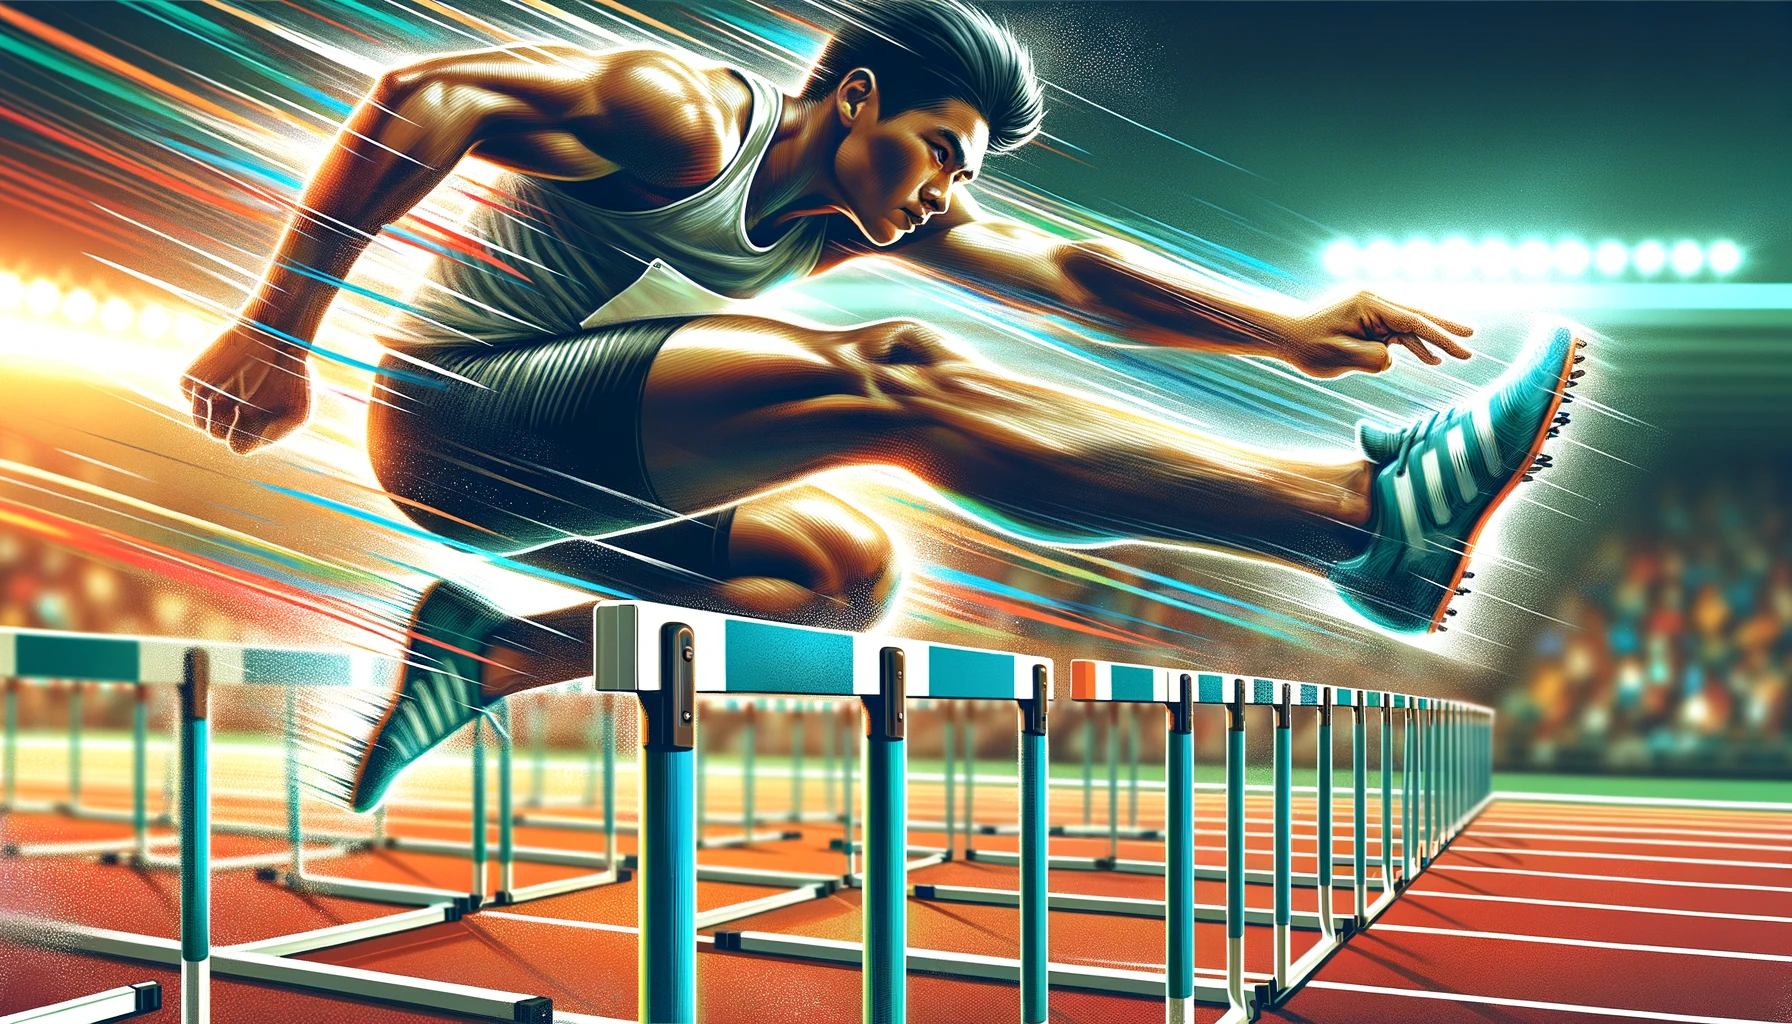 Illustration eines Nahaufnahme-Moments, in dem ein männlicher Athlet asiatischer Abstammung mit großer Beweglichkeit und Präzision eine Hürde überspringt.